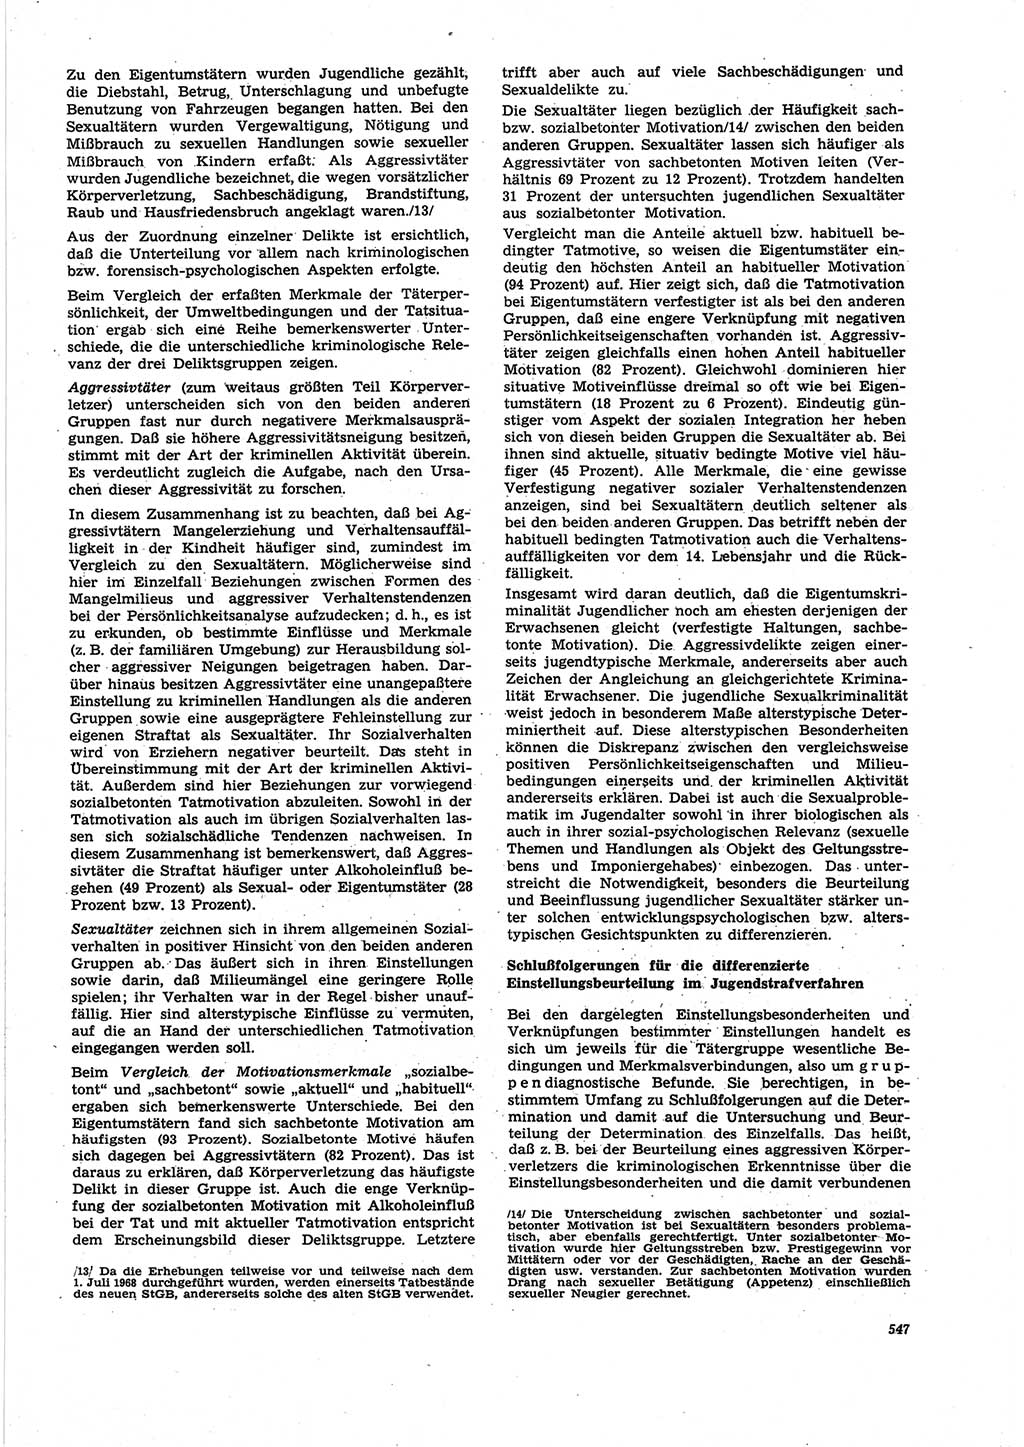 Neue Justiz (NJ), Zeitschrift für Recht und Rechtswissenschaft [Deutsche Demokratische Republik (DDR)], 25. Jahrgang 1971, Seite 547 (NJ DDR 1971, S. 547)